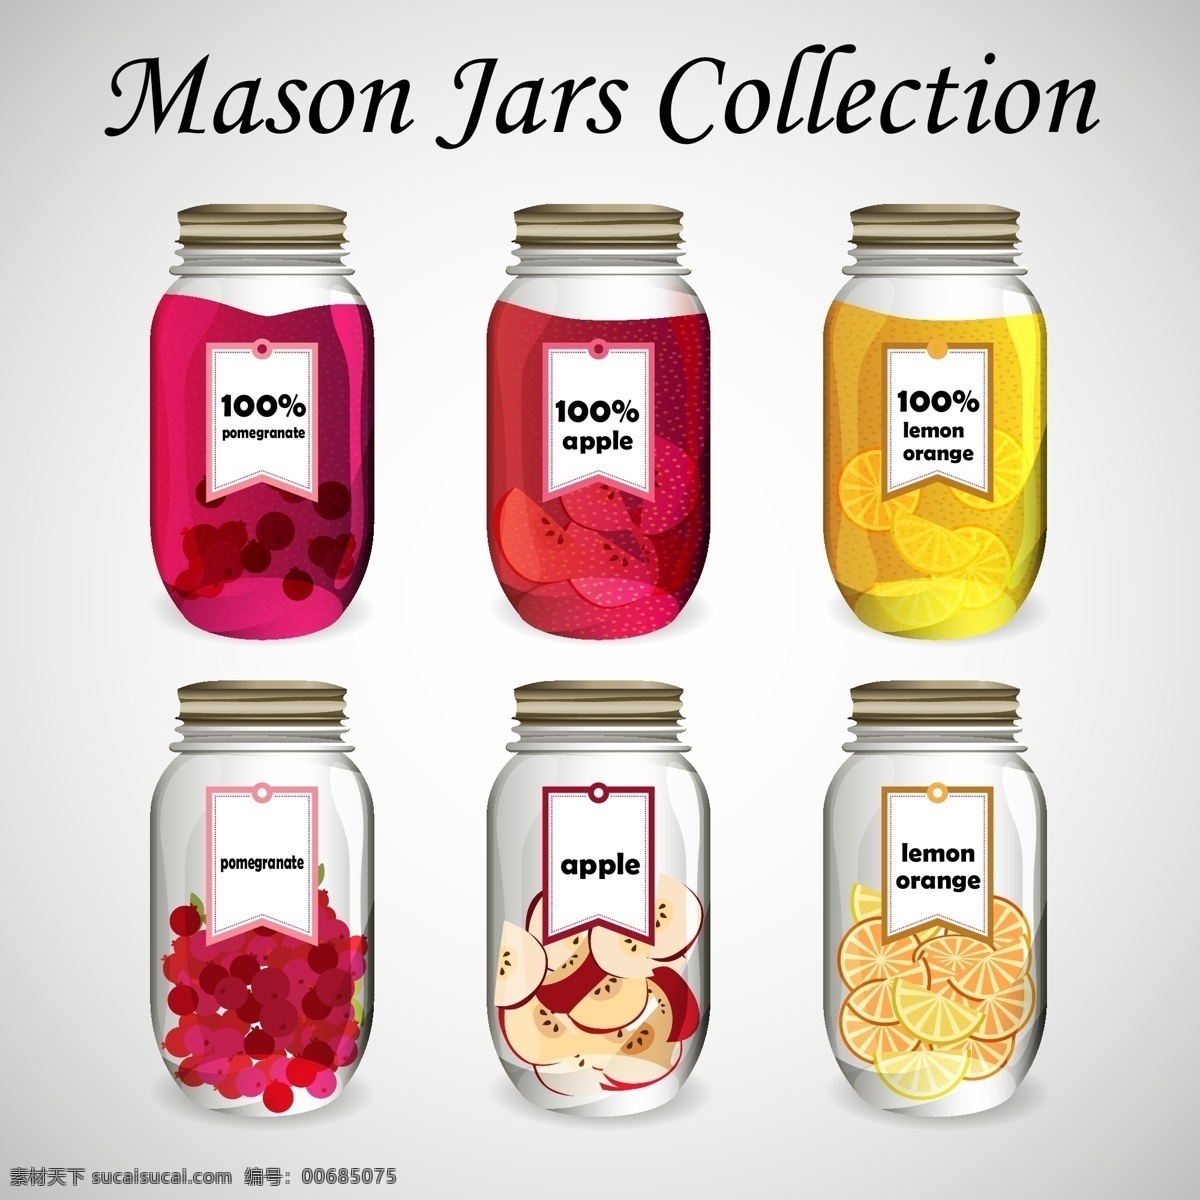 水果罐头 外观设计 食品包装 罐头 苹果 玻璃瓶 柠檬 樱桃 玻璃罐 食品罐头 玻璃 罐 包装设计 包装